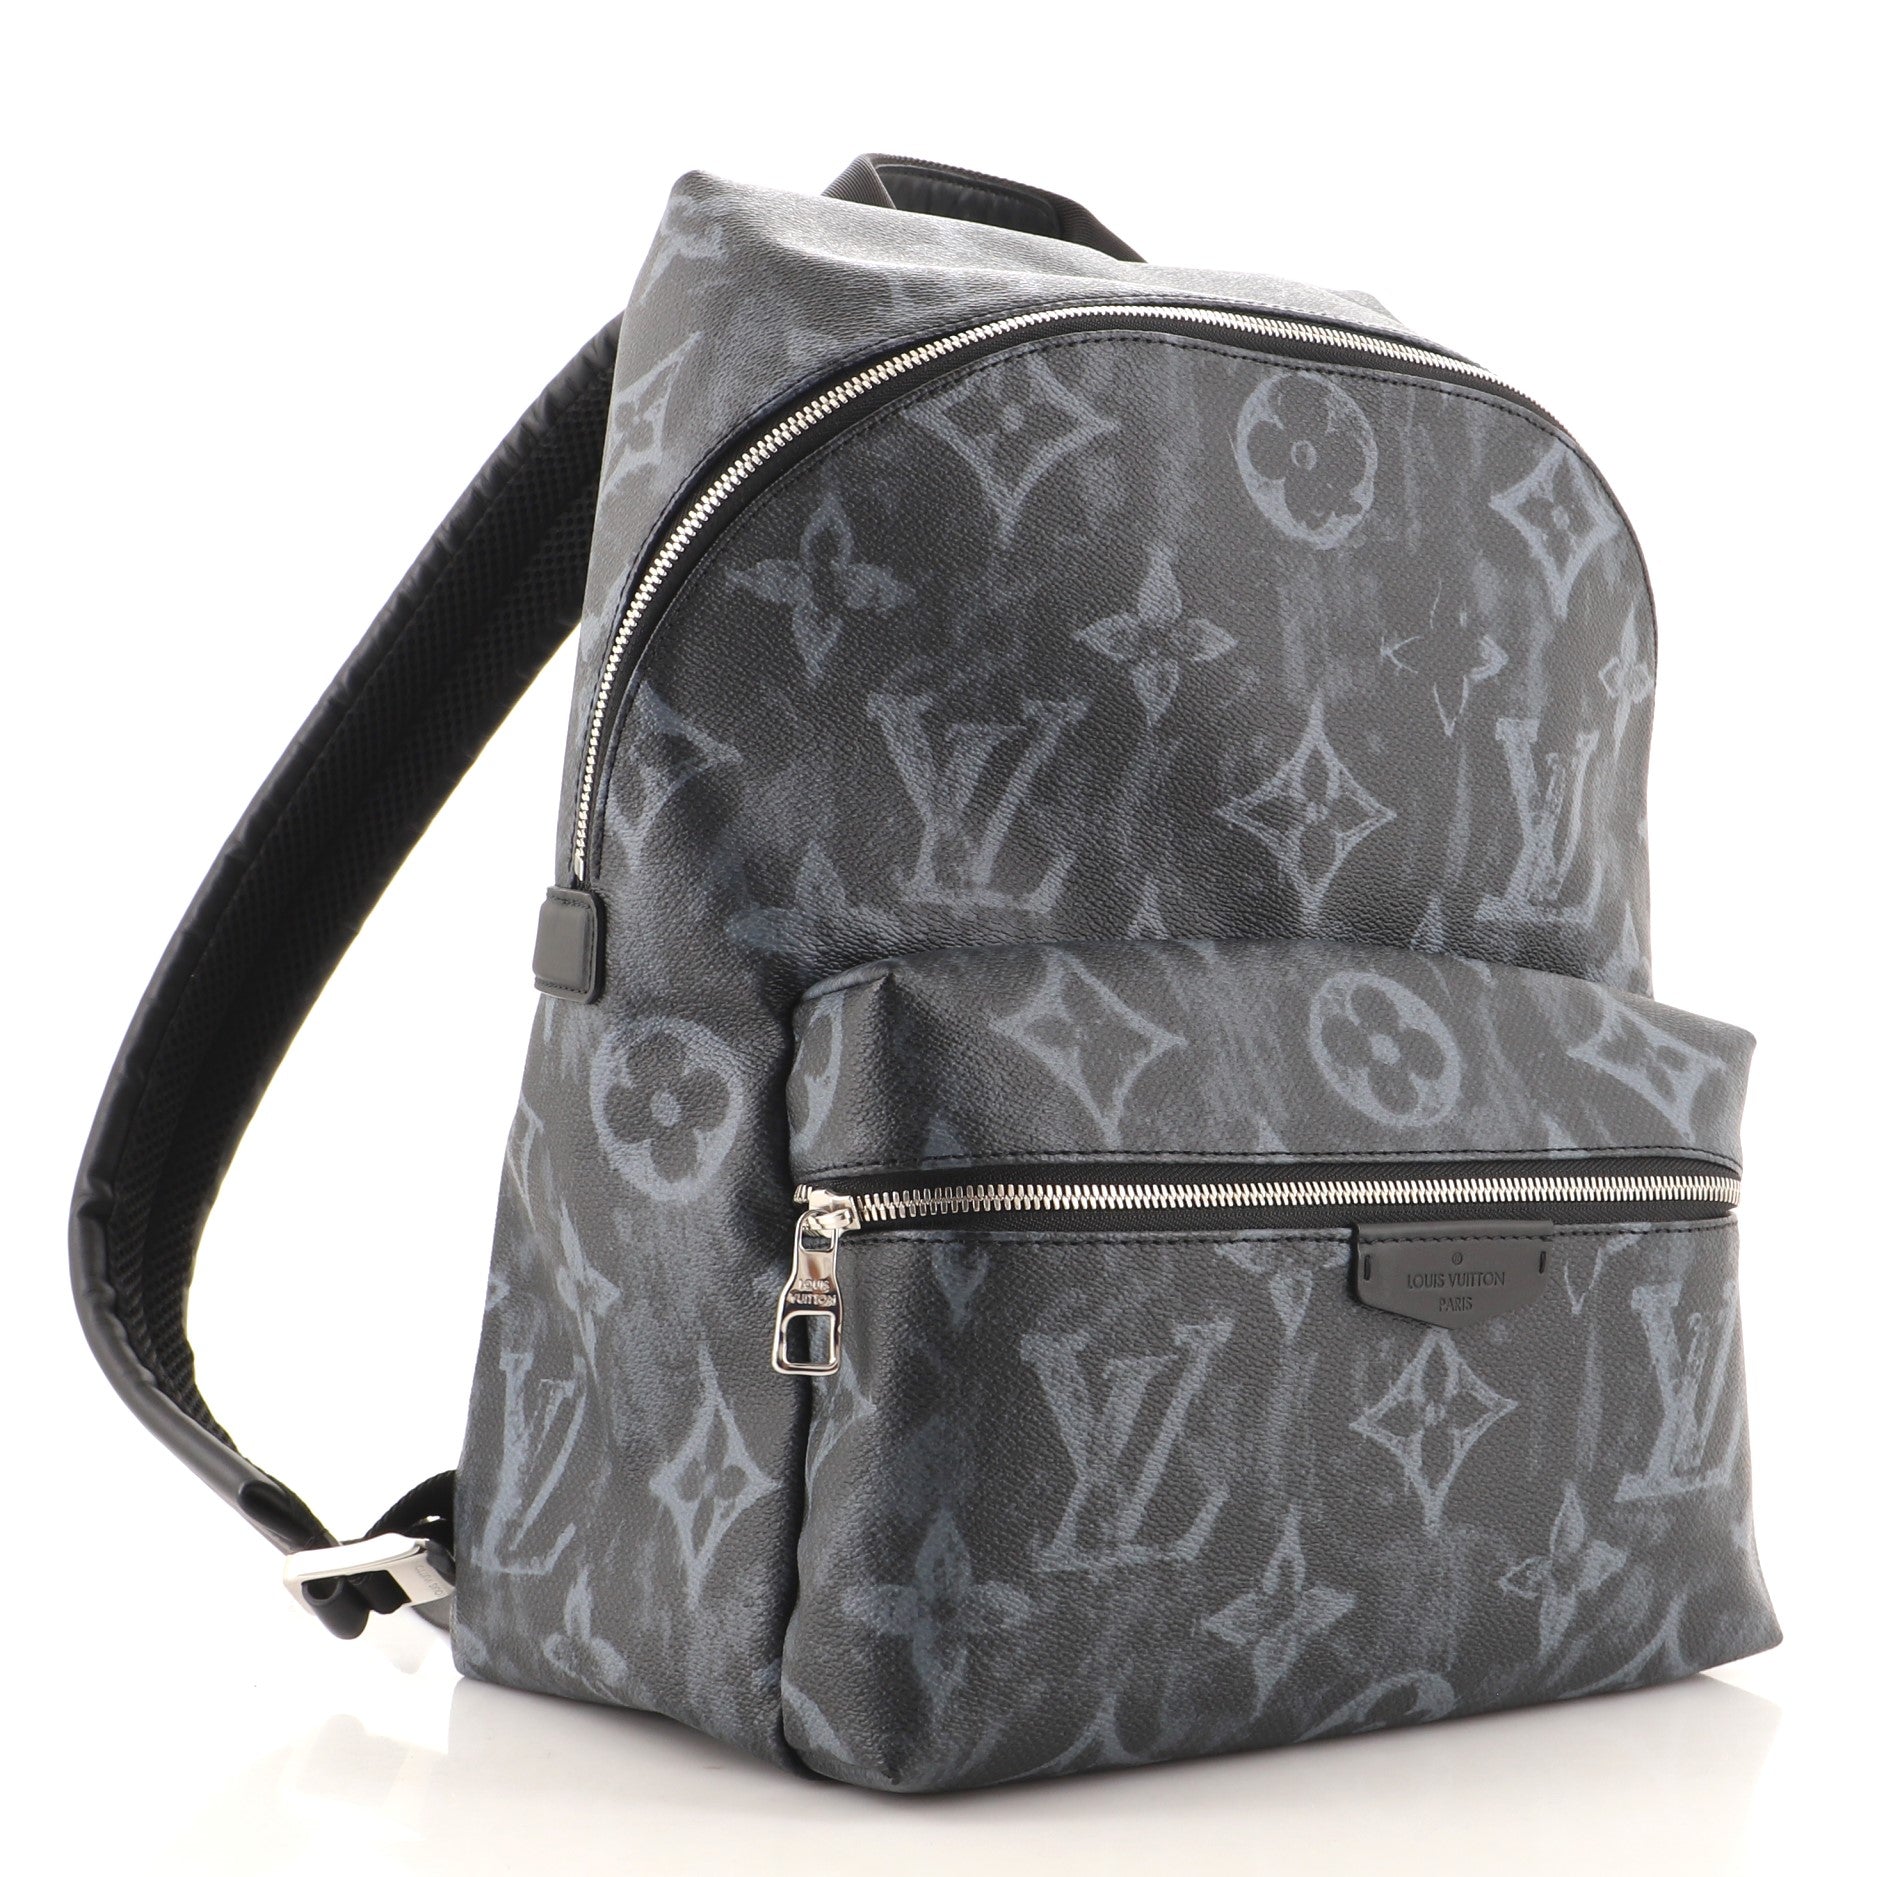 Louis Vuitton Trunk Messenger Bag Limited Edition Monogram Pastel Noir Pm